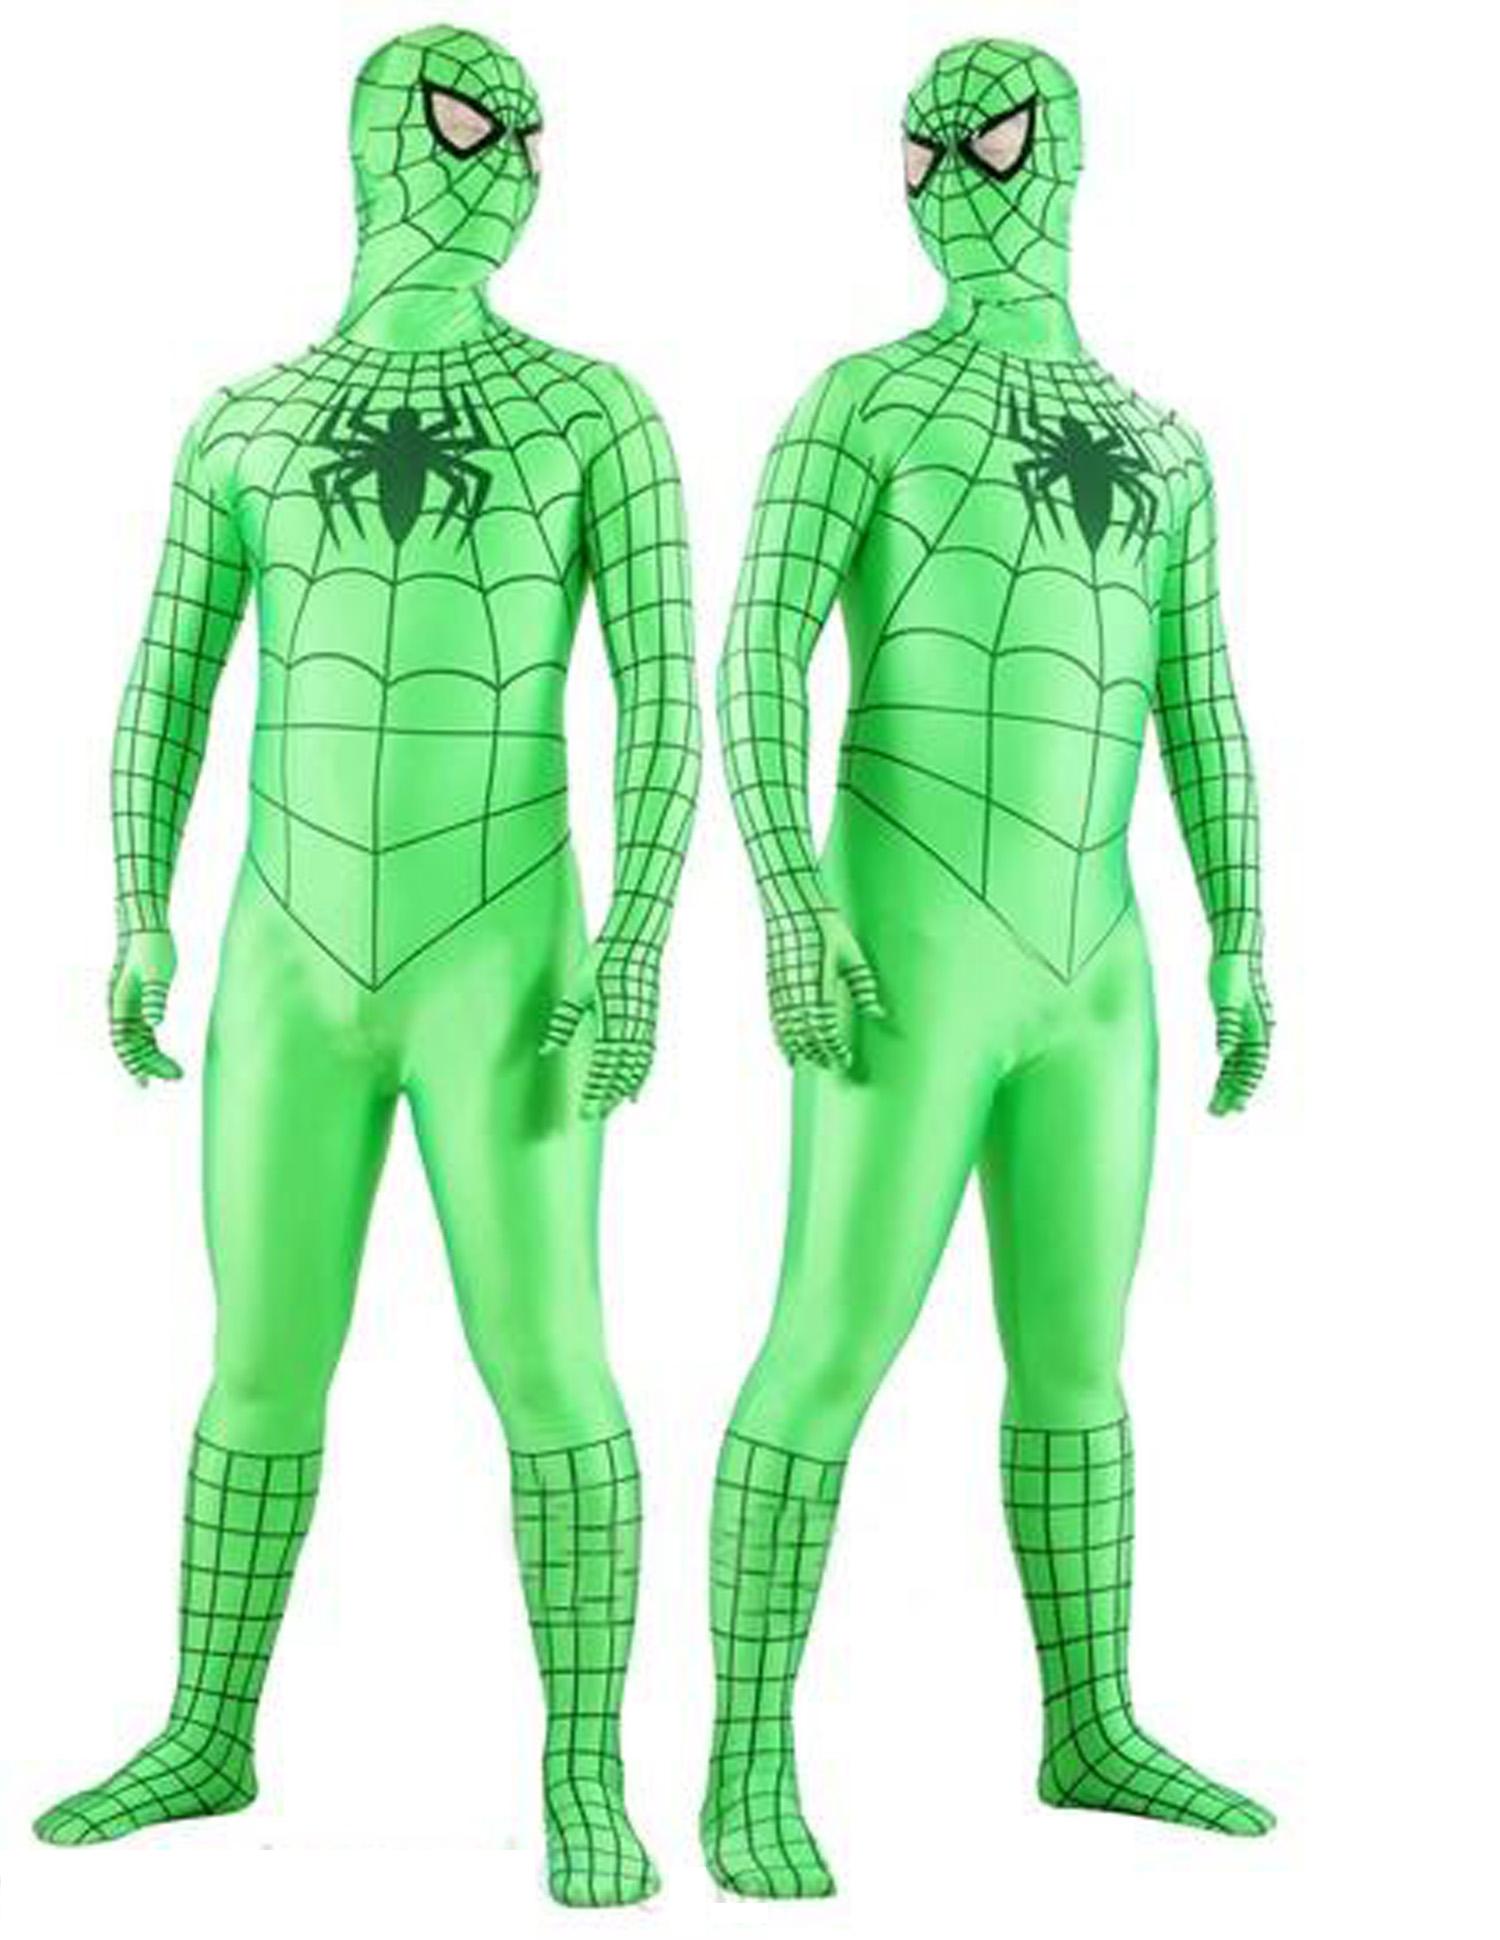 Костюмы спайдер. Spider man костюмы. Костюм Адама. Spider man Green Costume. Костюм Адама связь.